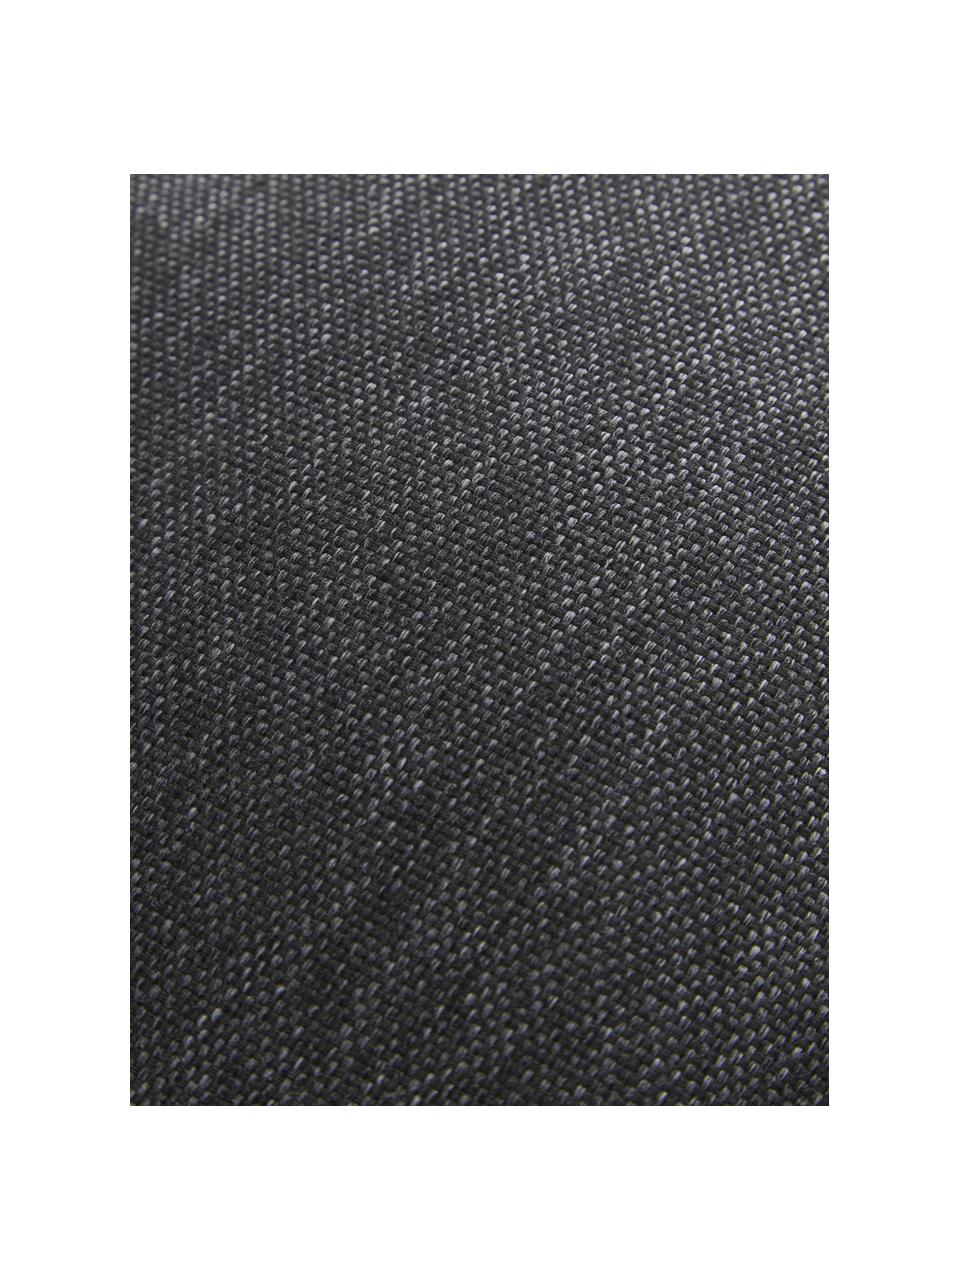 Cuscino da esterno grigio scuro Olef, 100% cotone, Grigio scuro, Larg. 30 x Lung. 50 cm